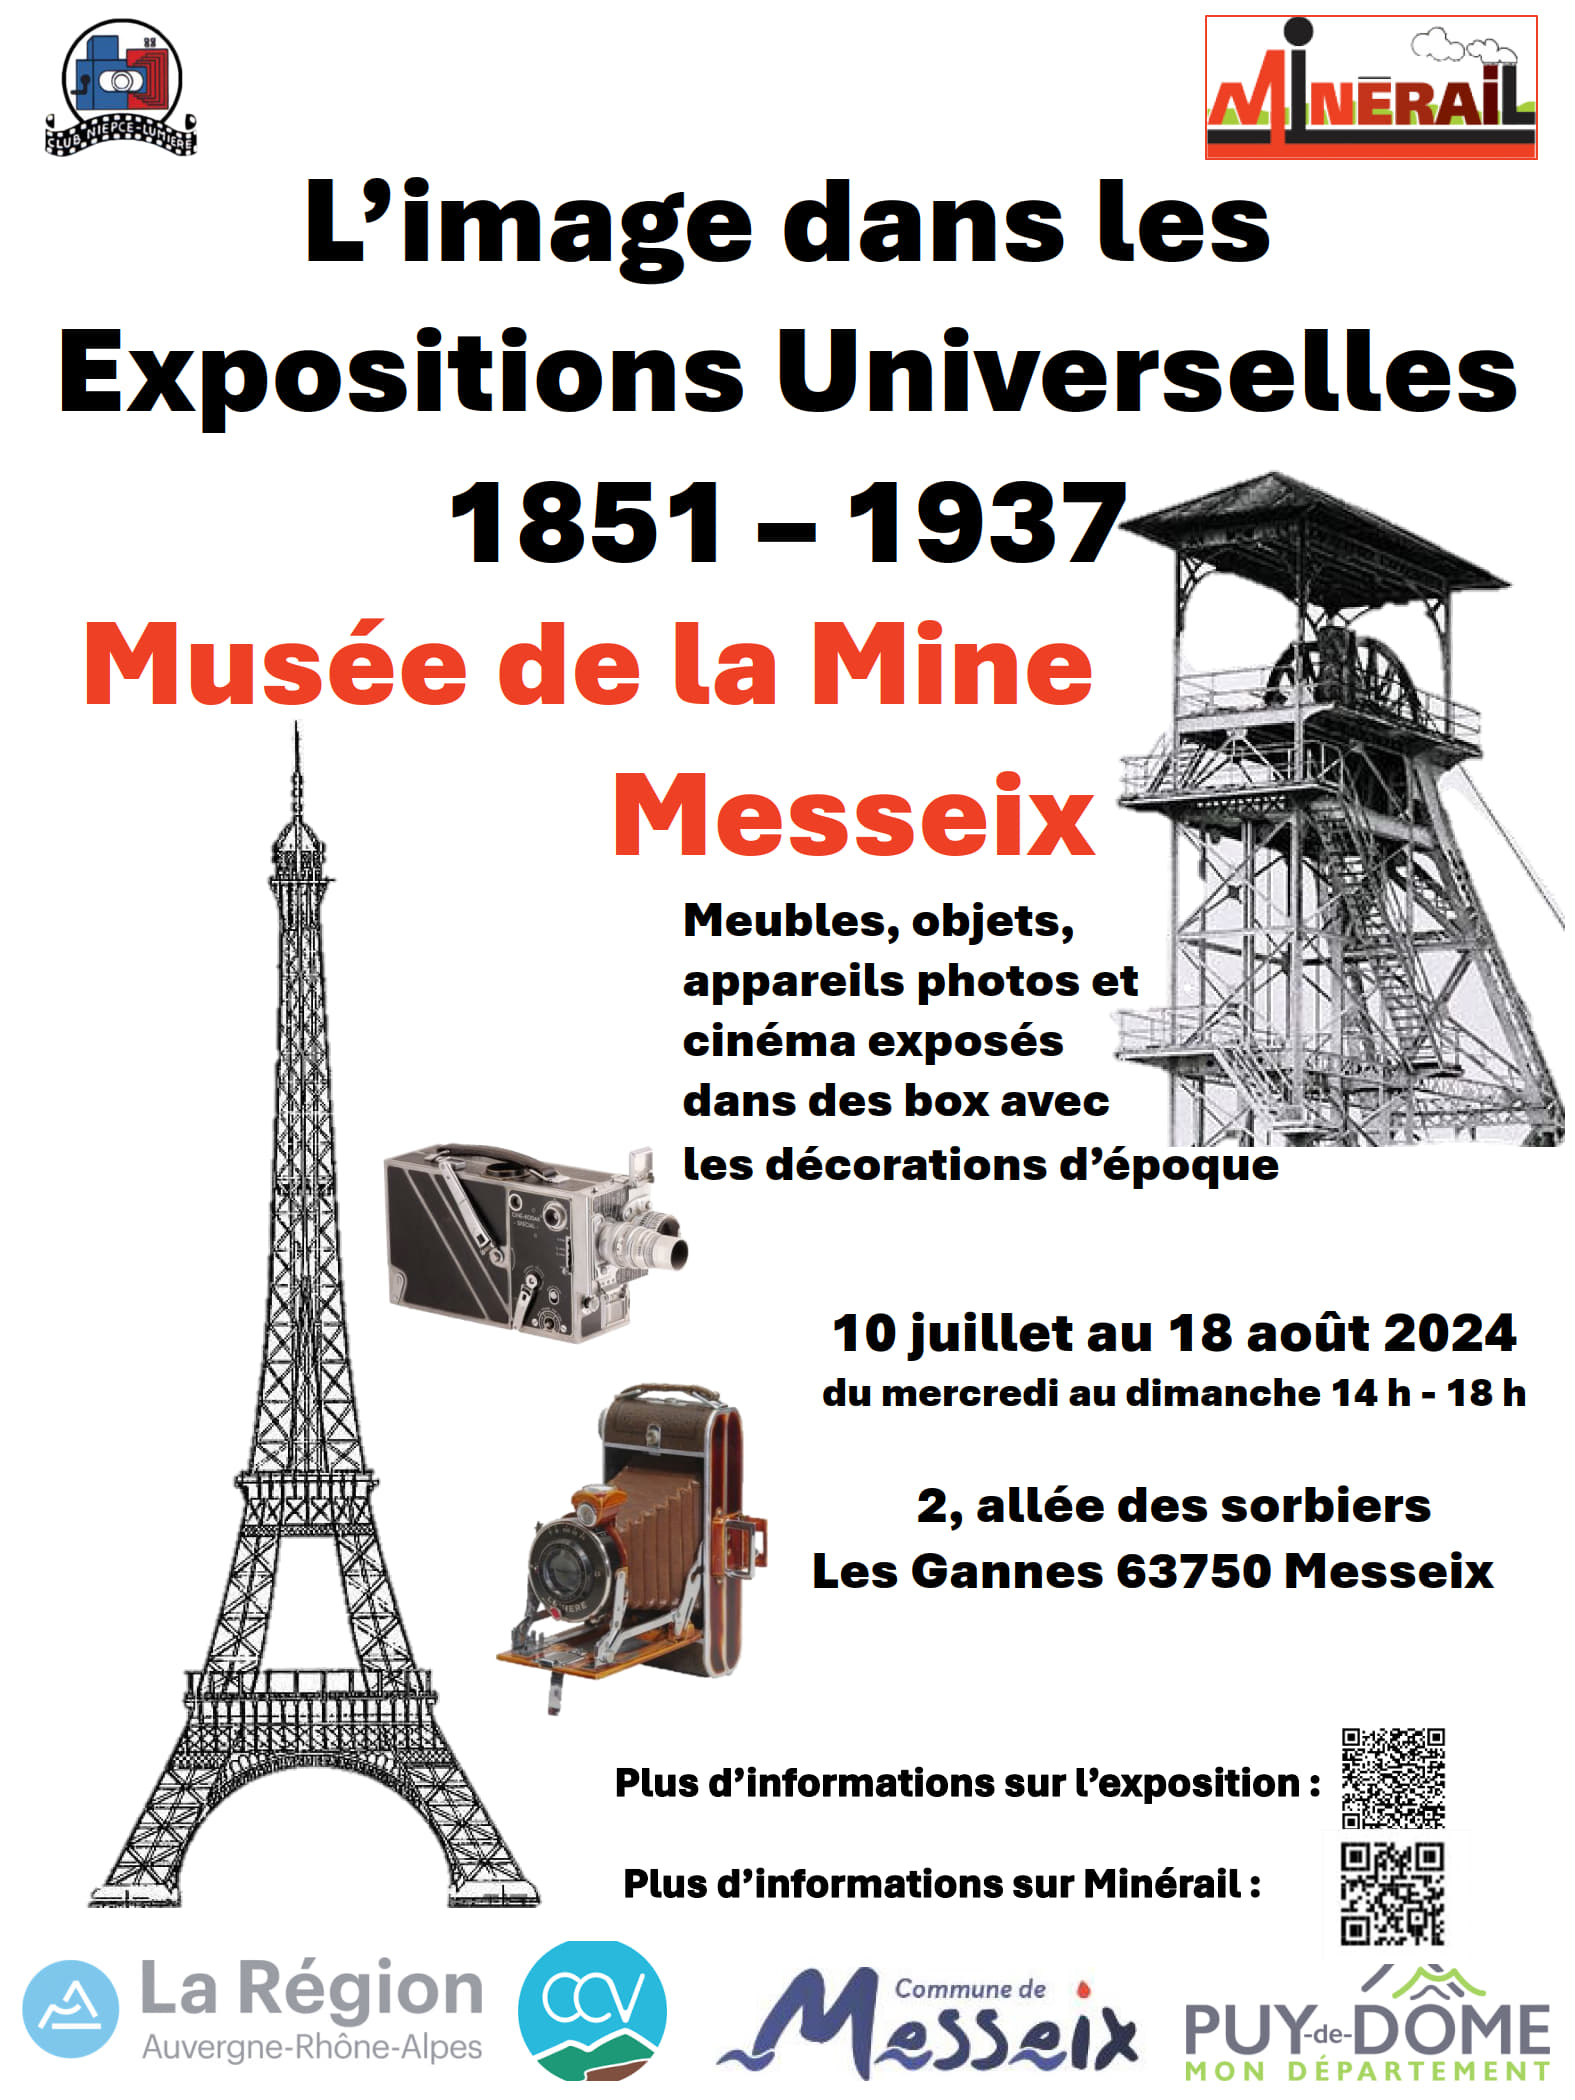 Messeix - L'image dans les Expositions Universelles 1851-1937